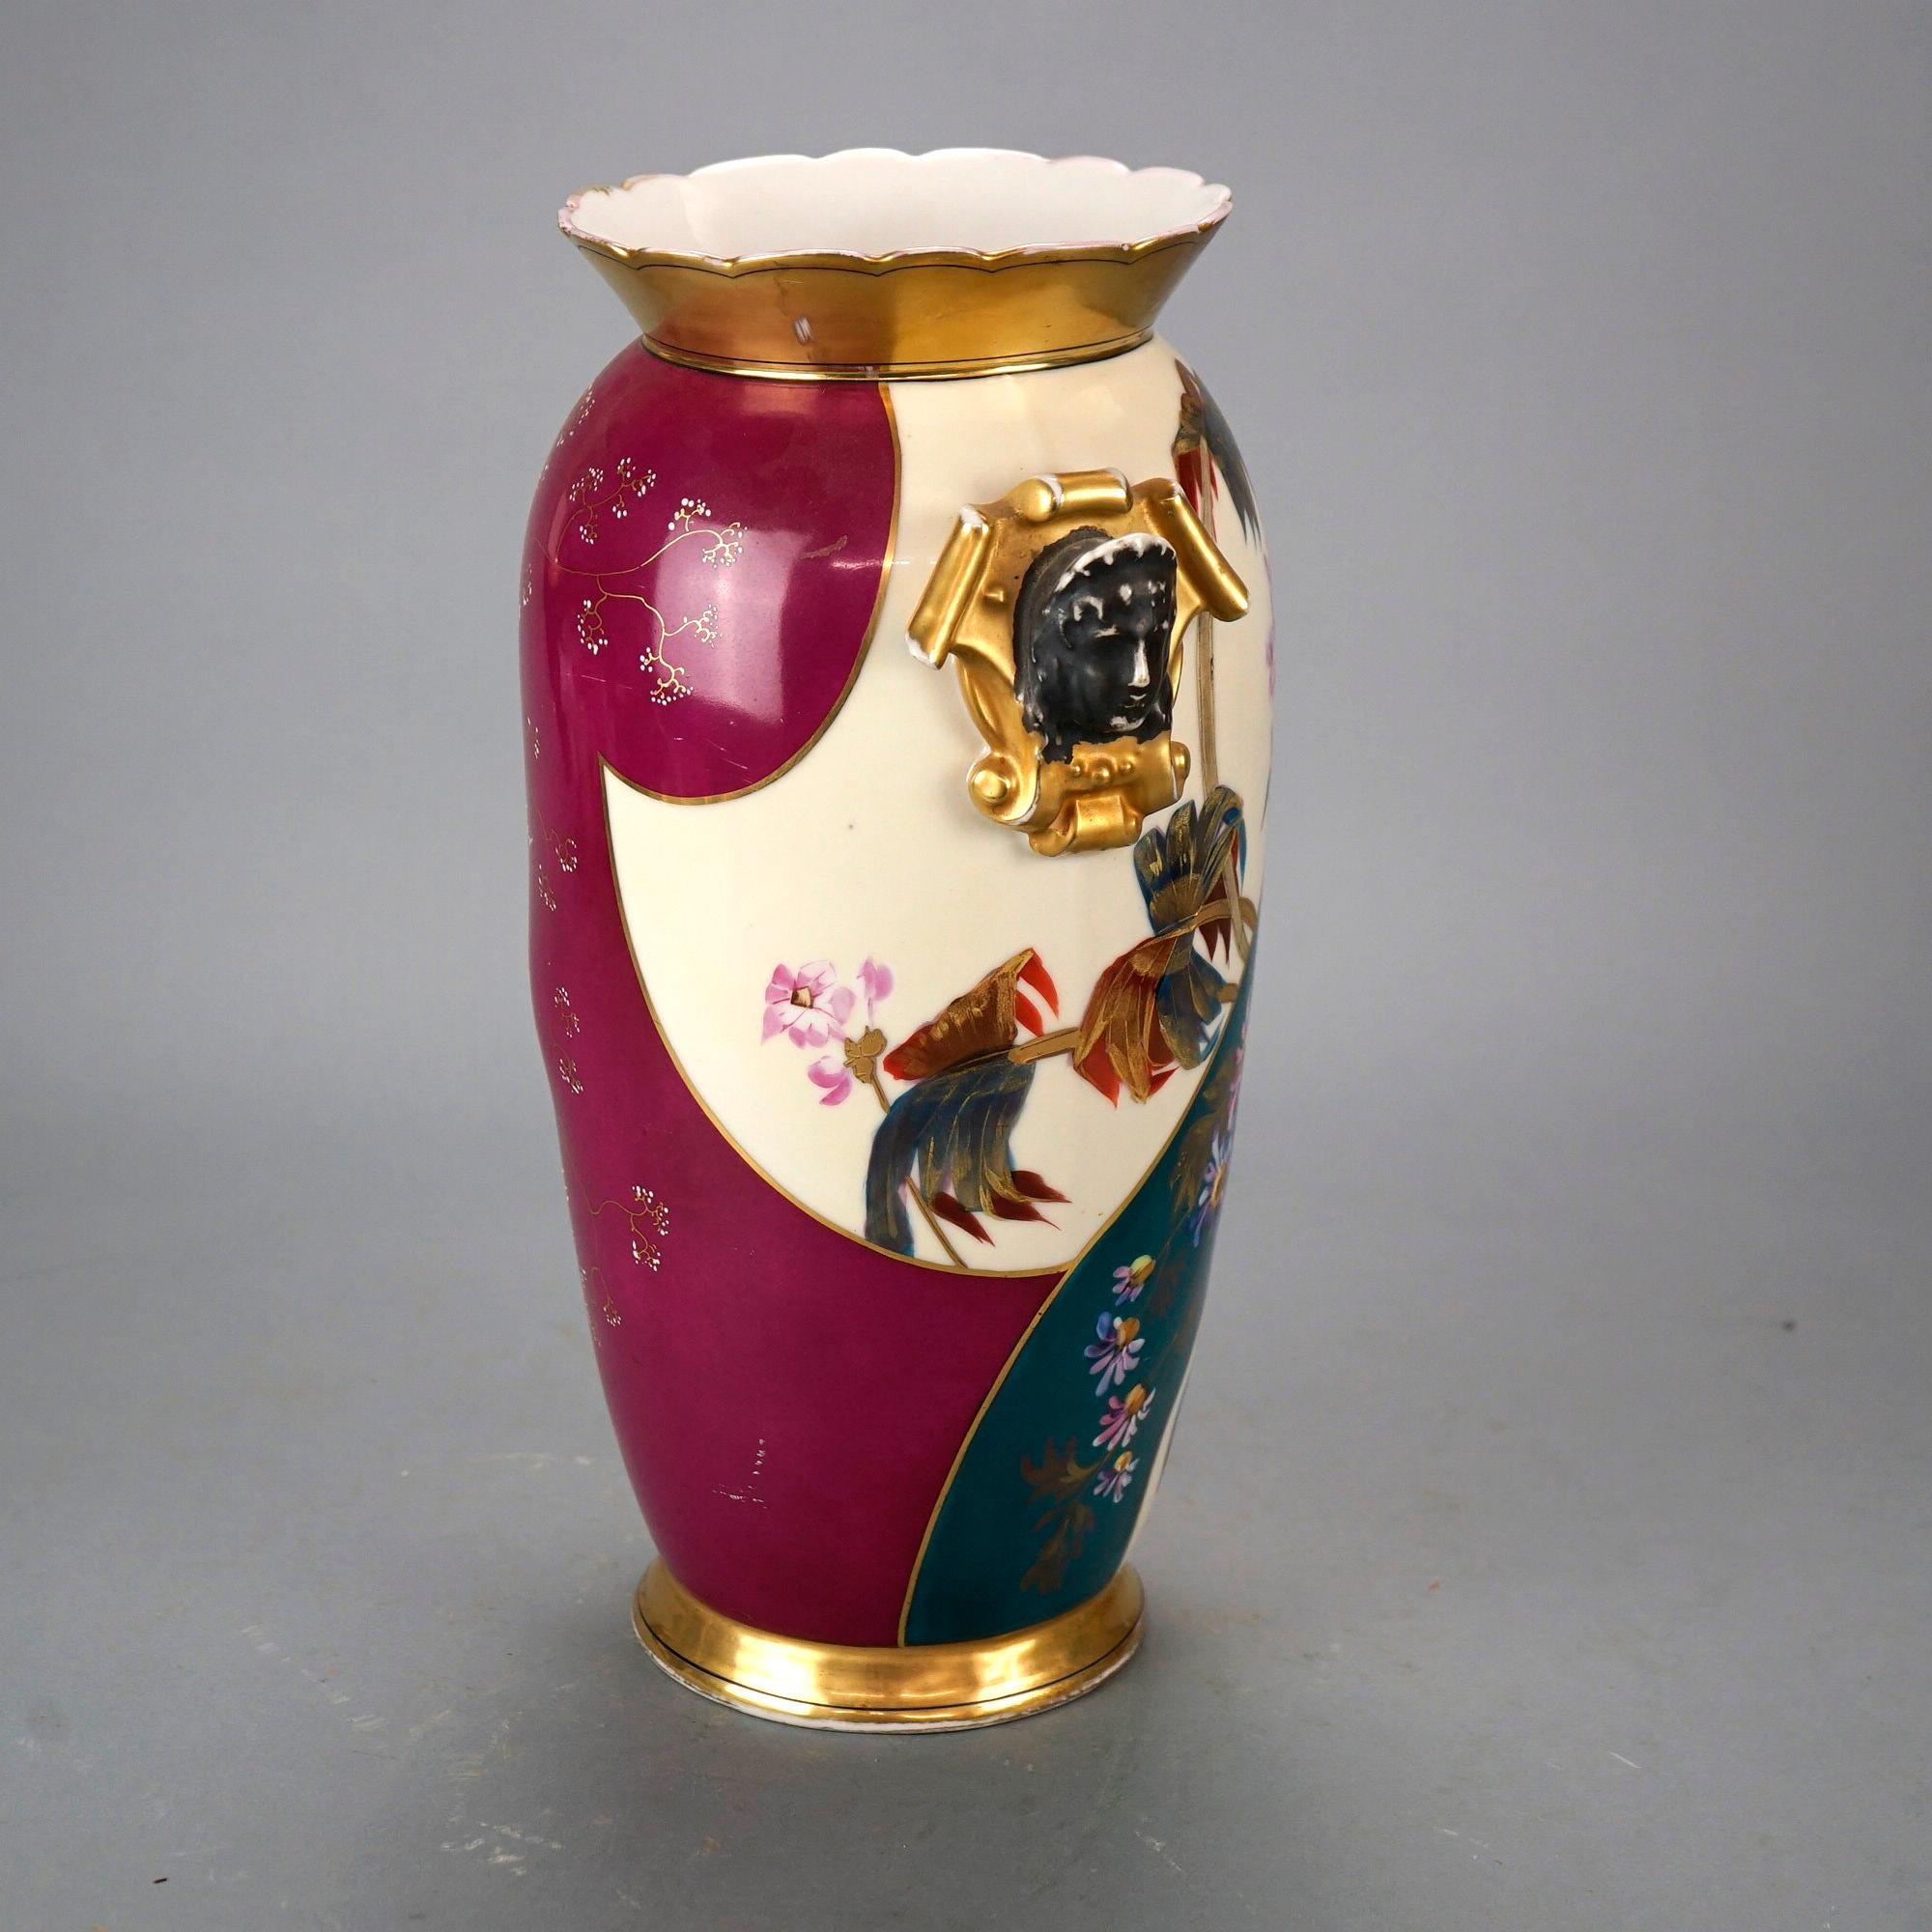 Eine antike französische Vase mit Figuren aus dem alten Paris bietet eine Porzellankonstruktion mit handgemalten floralen Elementen und vergoldeten Highlights, flankierende Henkel in Schildform mit klassischen männlichen Masken, Herstellerzeichen